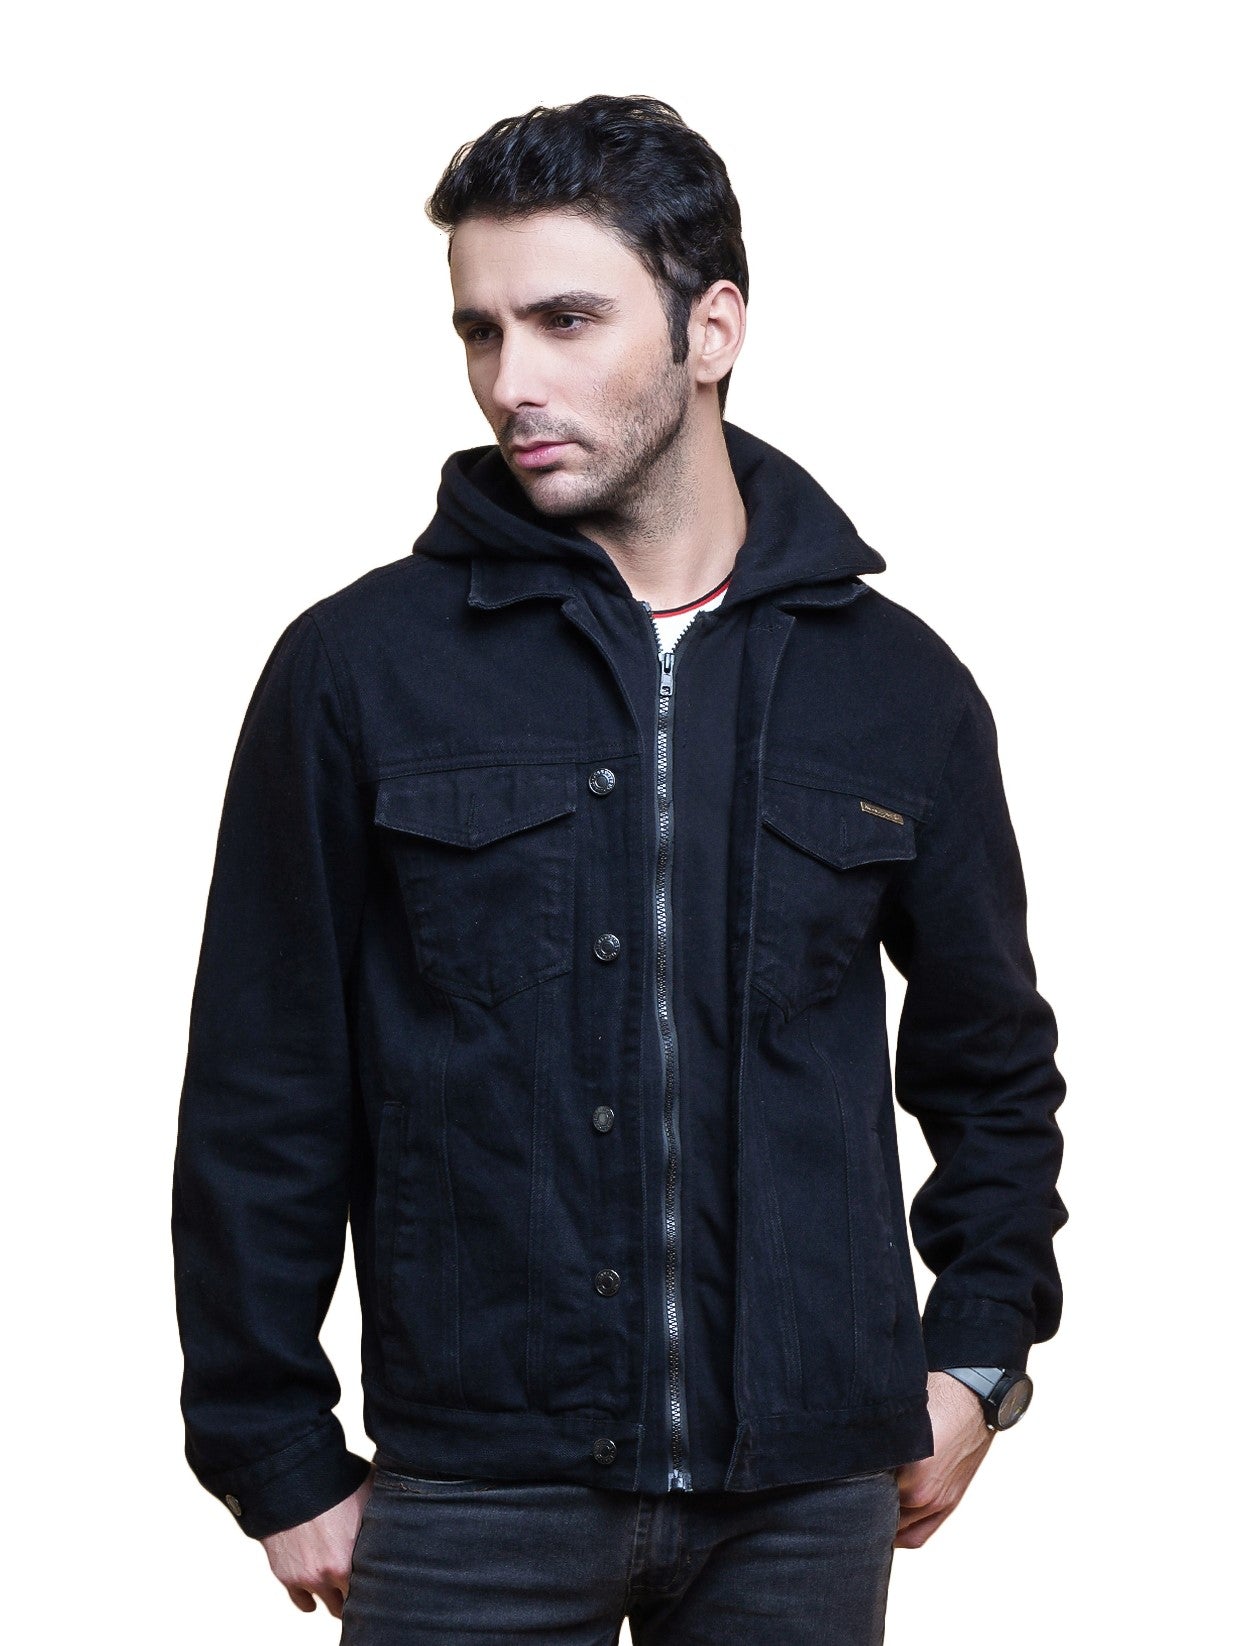 Pile-lined denim jacket - Black - Men | H&M IN